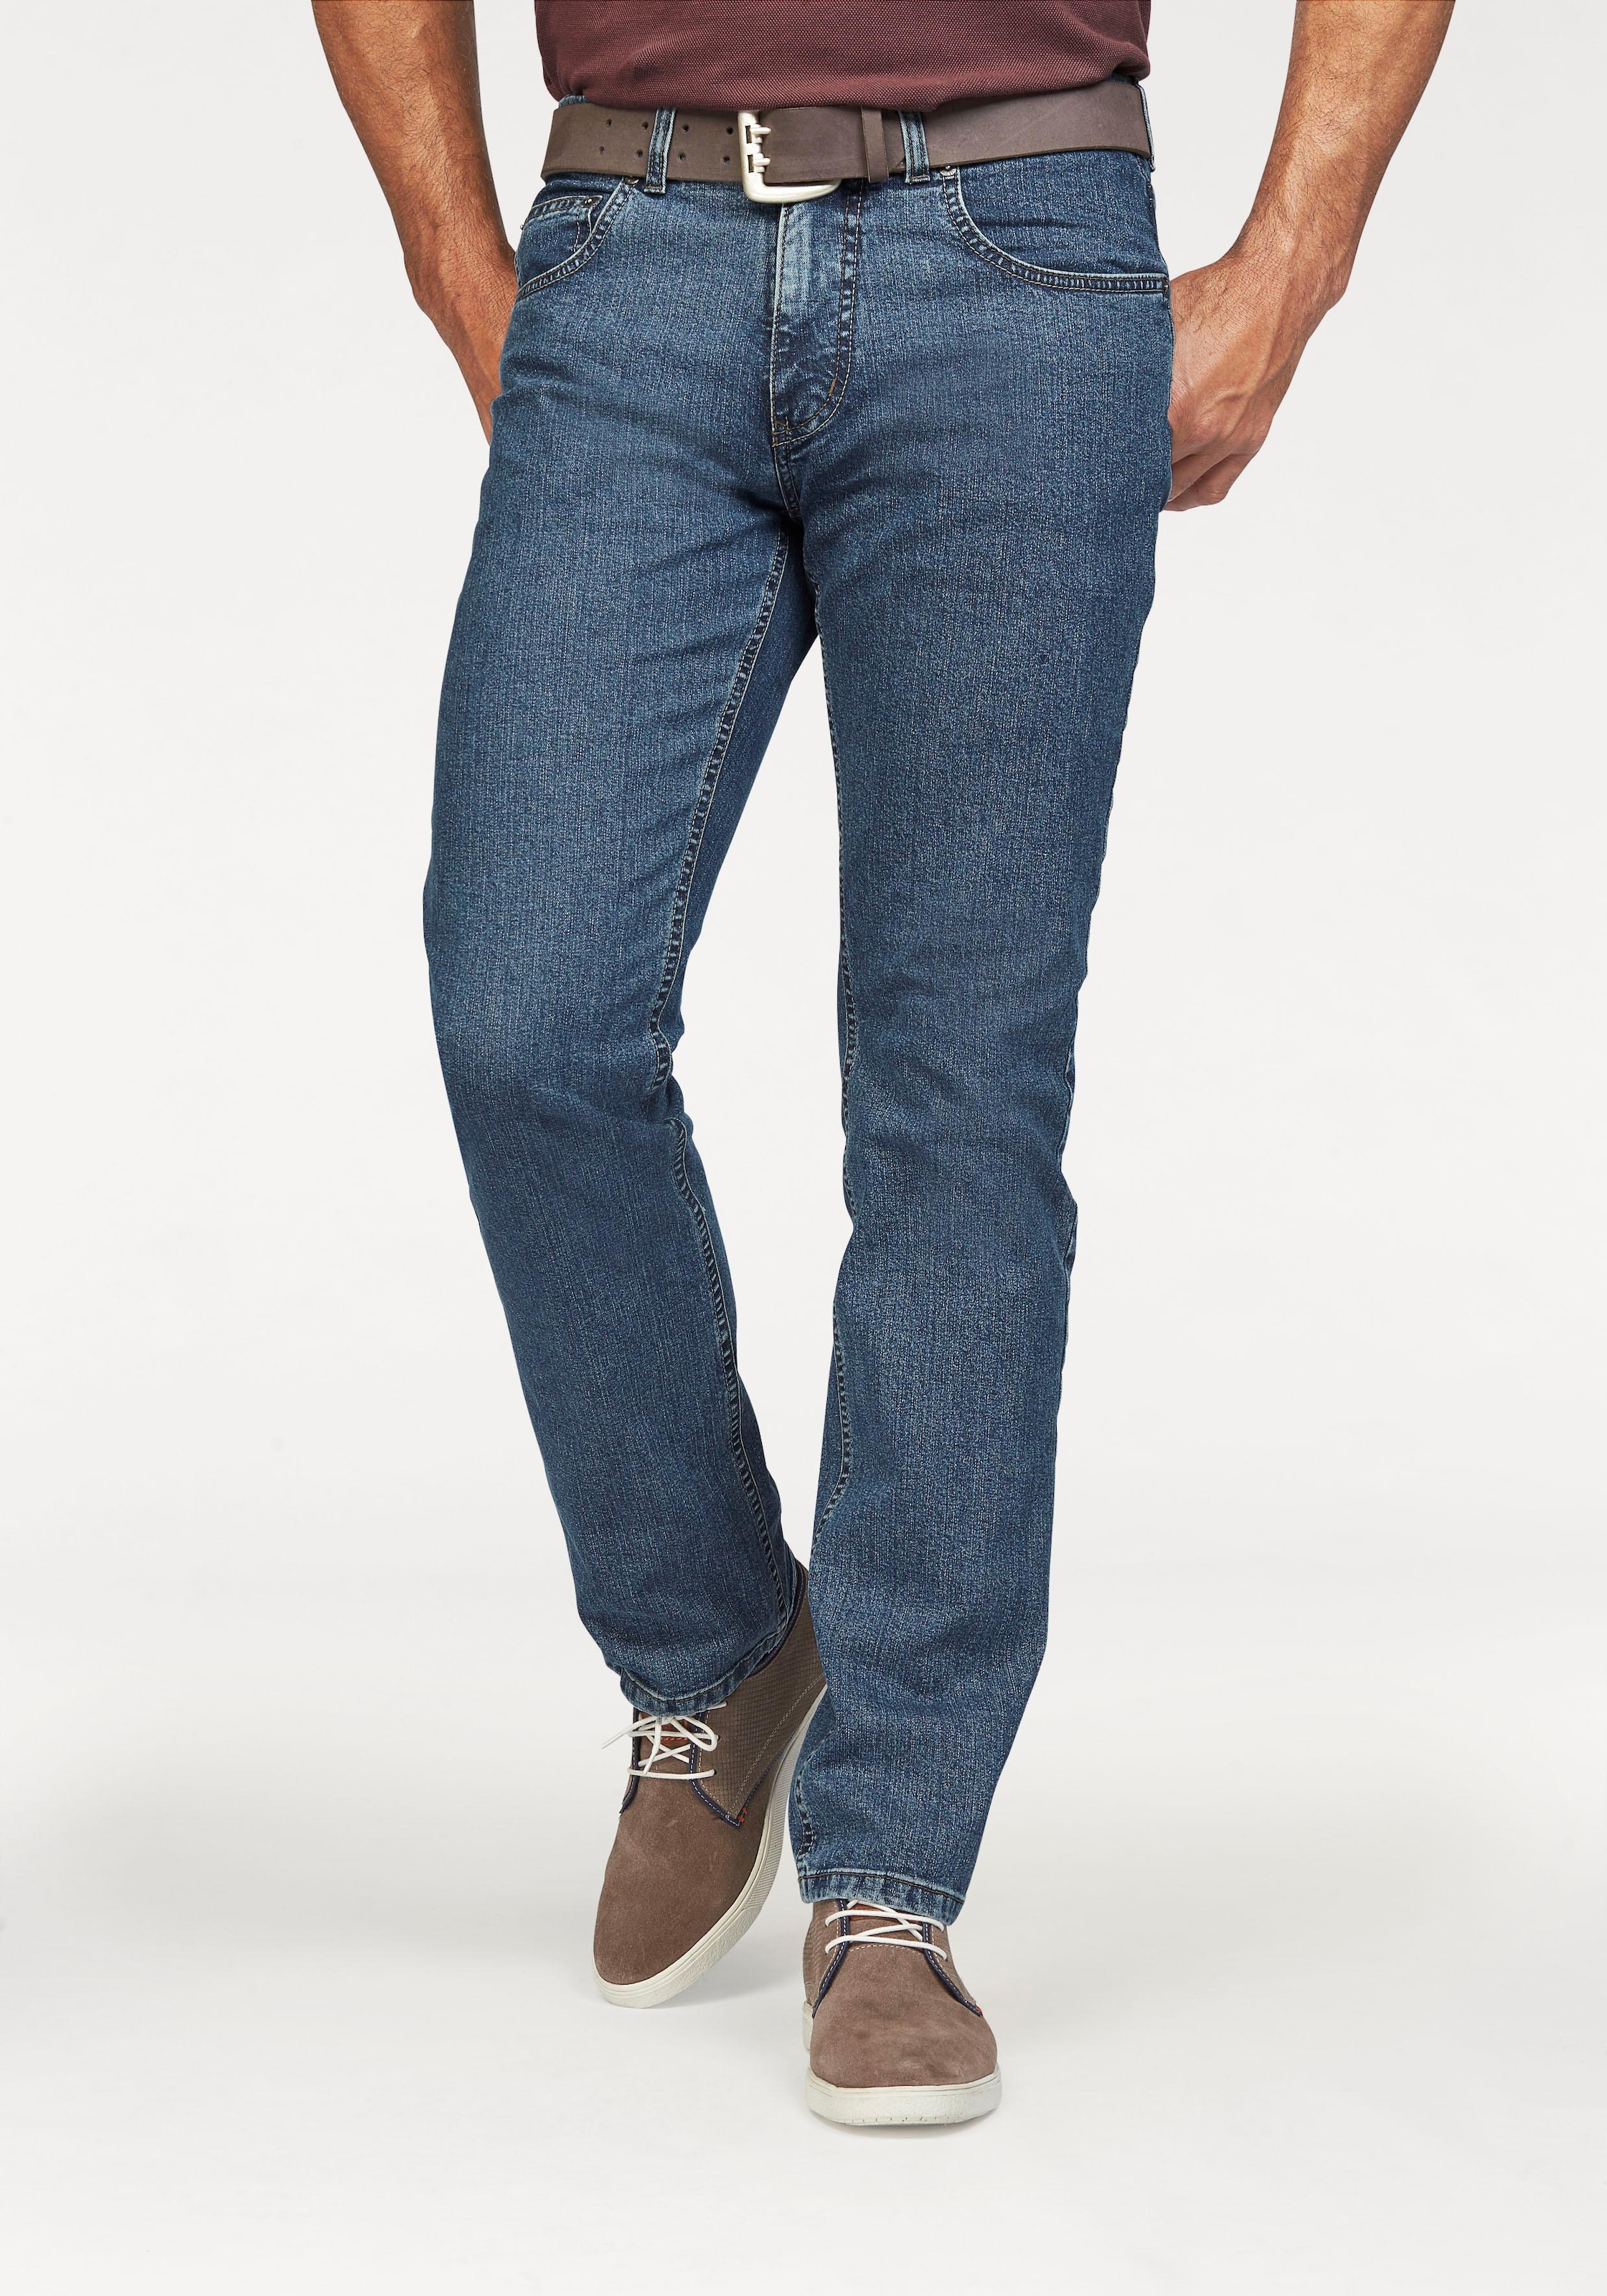 auf Fit versandkostenfrei »Ron«, Straight Jeans Authentic Stretch-Jeans Pioneer